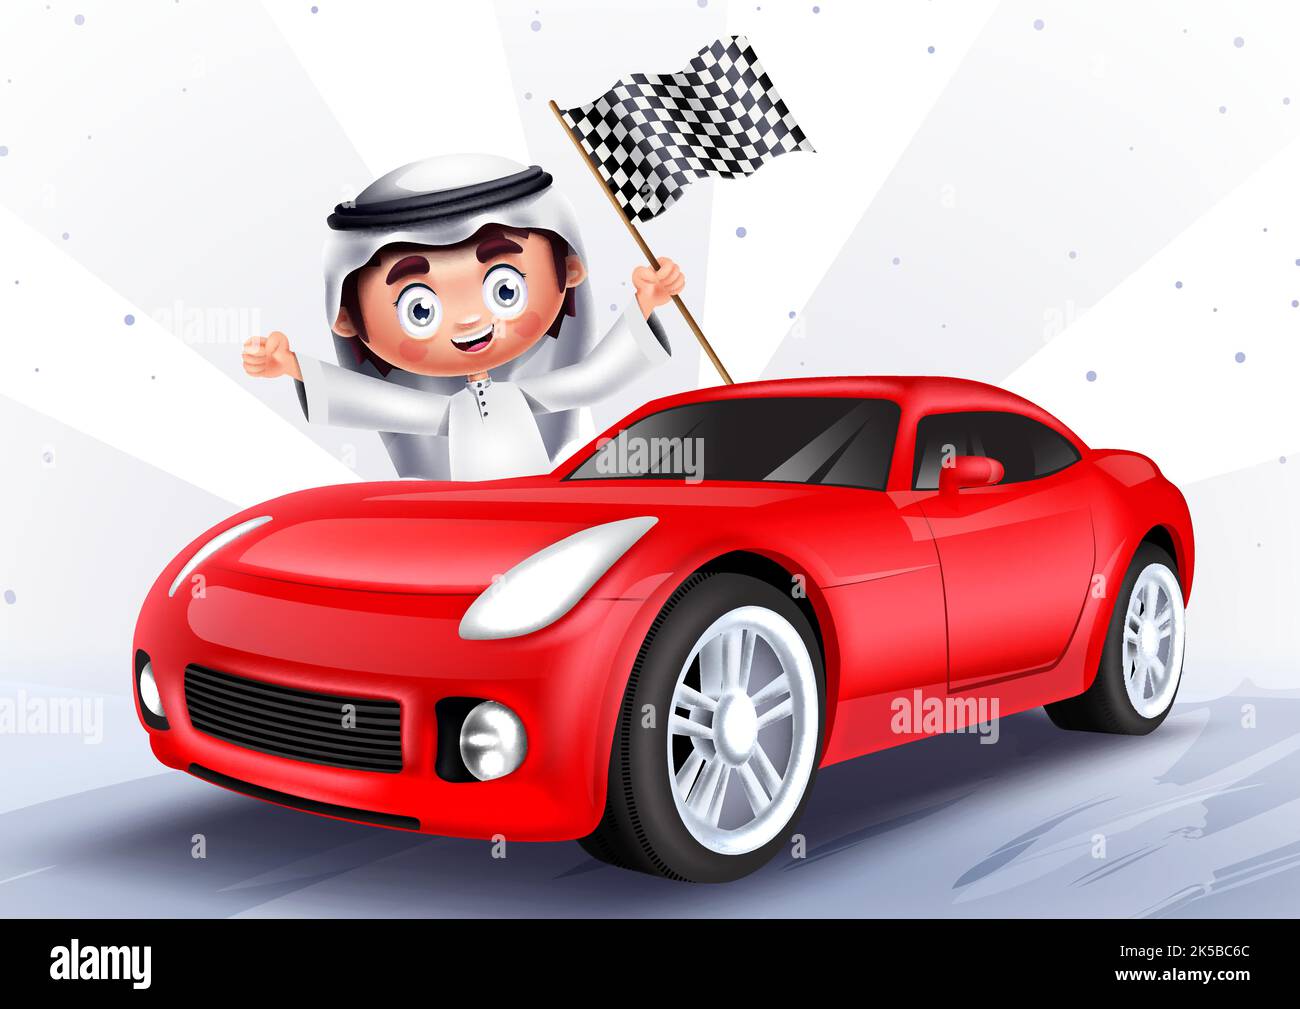 Motif vectoriel de personnages arabo-gamin. Garçon arabe saoudien avec des éléments de voiture de sport rouge applaudisant et tenant le drapeau pour l'histoire de course automobile. Illustration de Vecteur